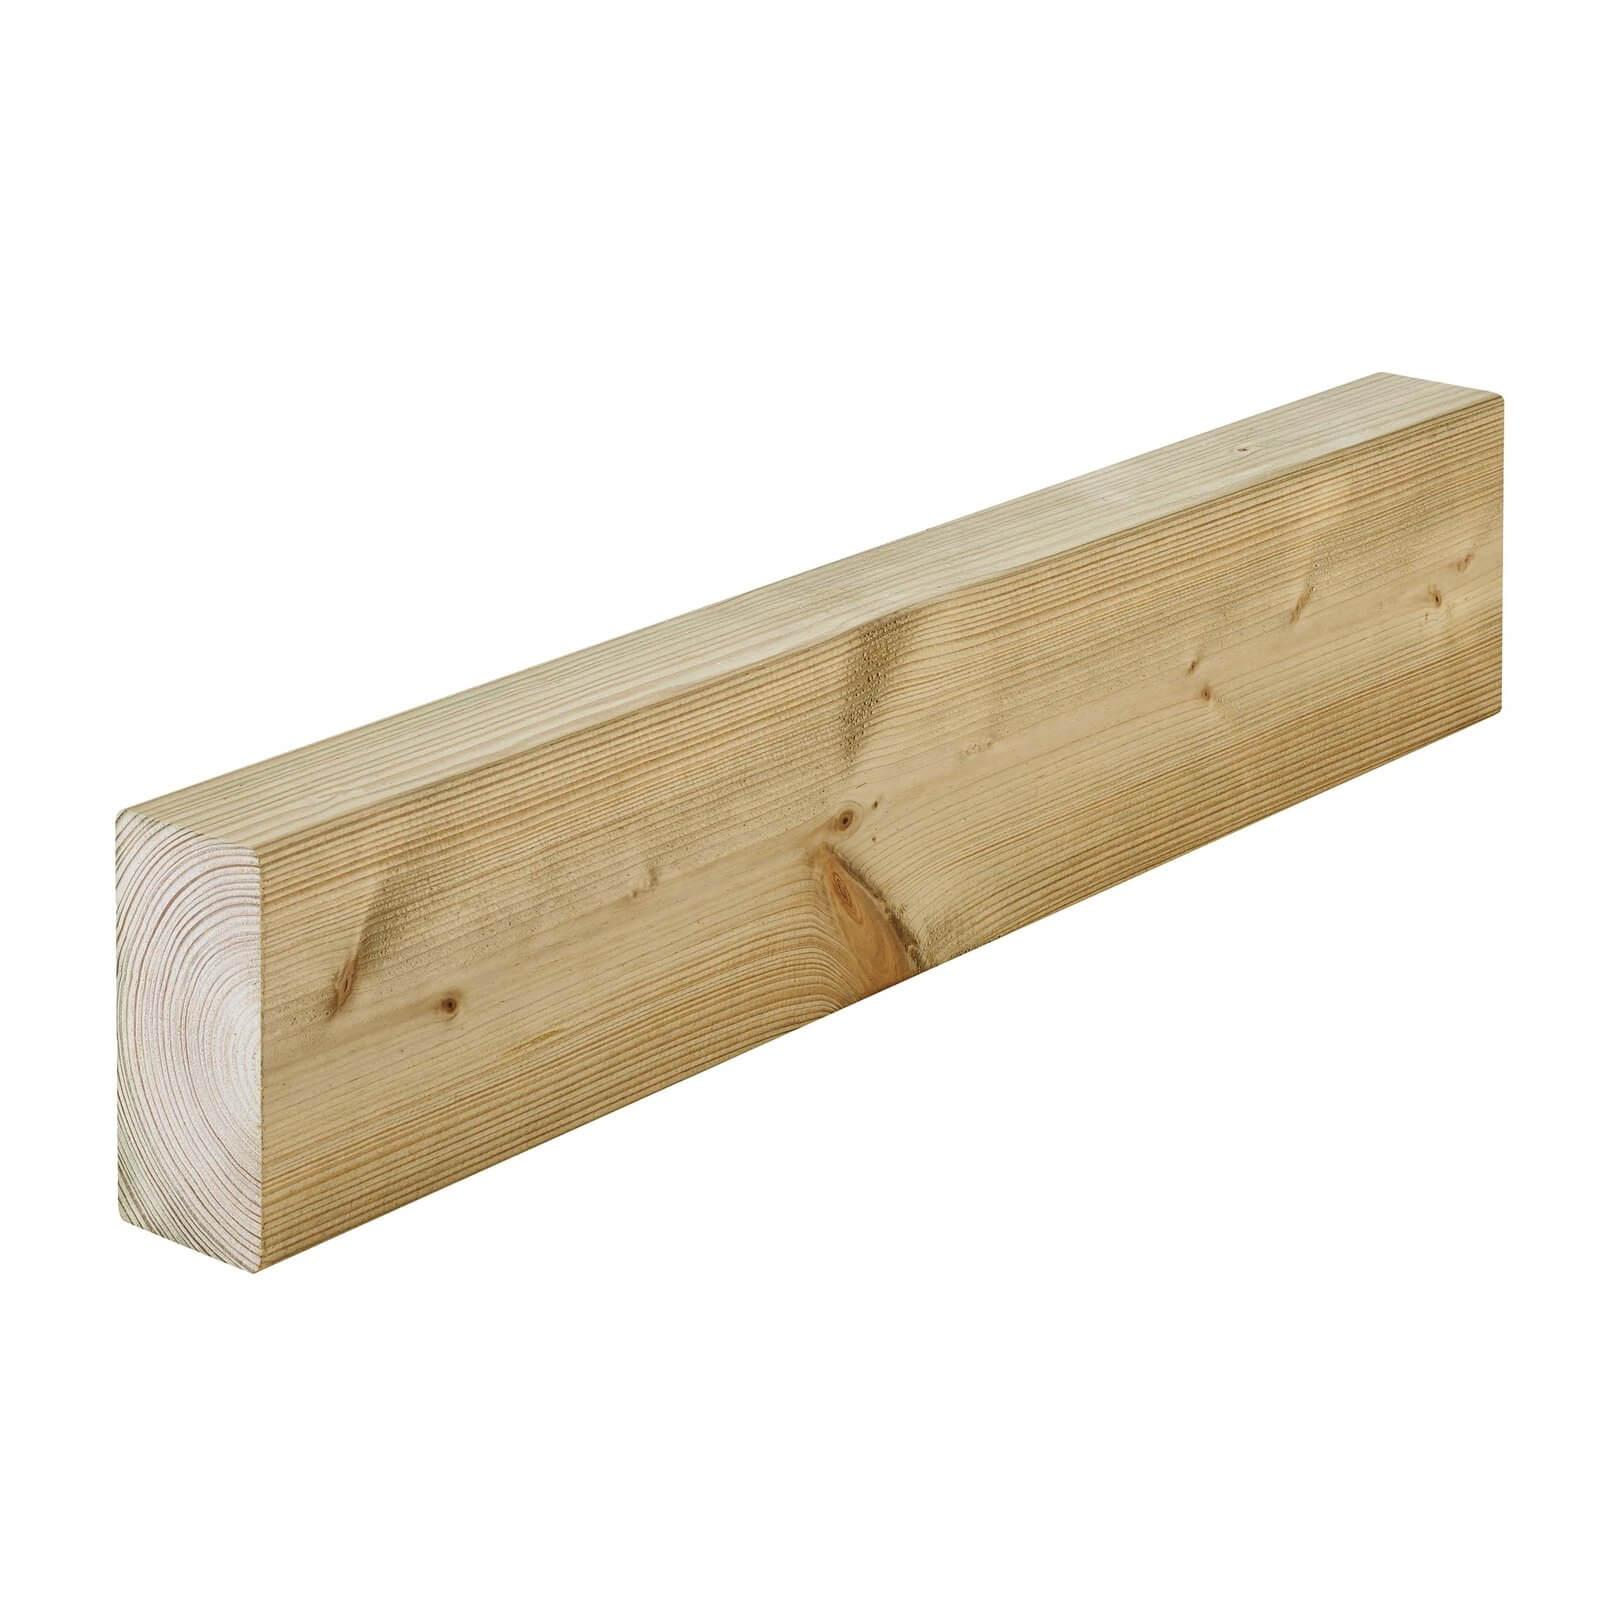 Metsa C16 Grade Internal Structure Carcassing Timber 2.4m (45 x 95 x 2400mm)